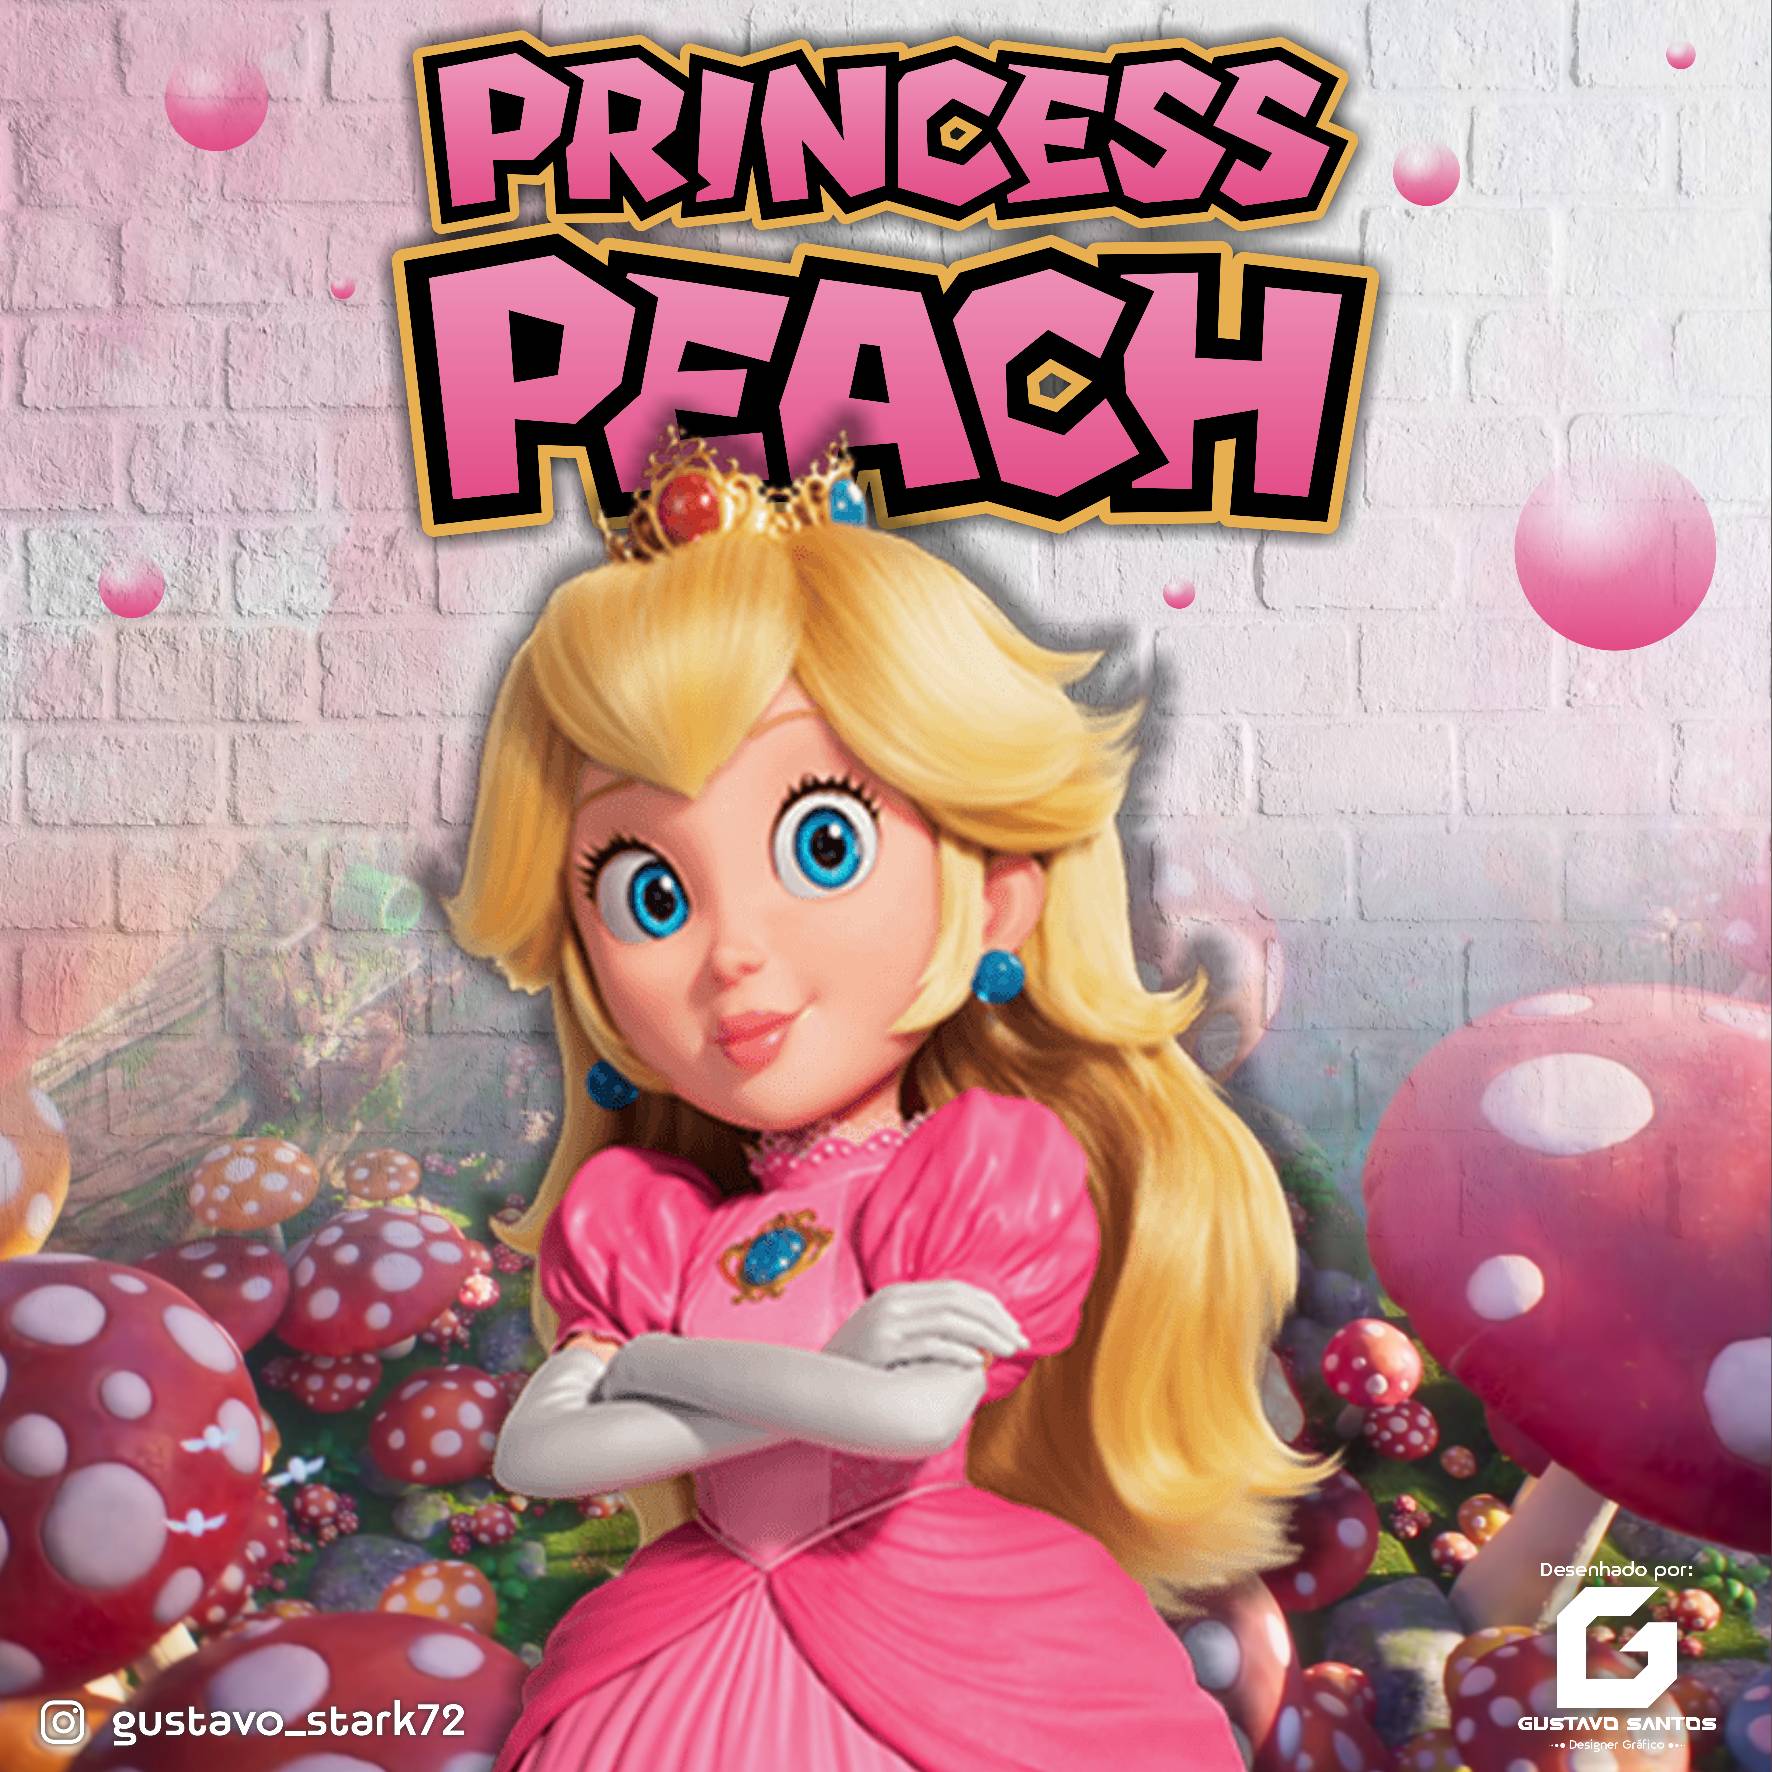 Princess Peach 🍑 #supermario #supermariobros #supermariobrosmovie #smb # mario #princesspeach #peach #peaches #movie #nintendo #fanart…